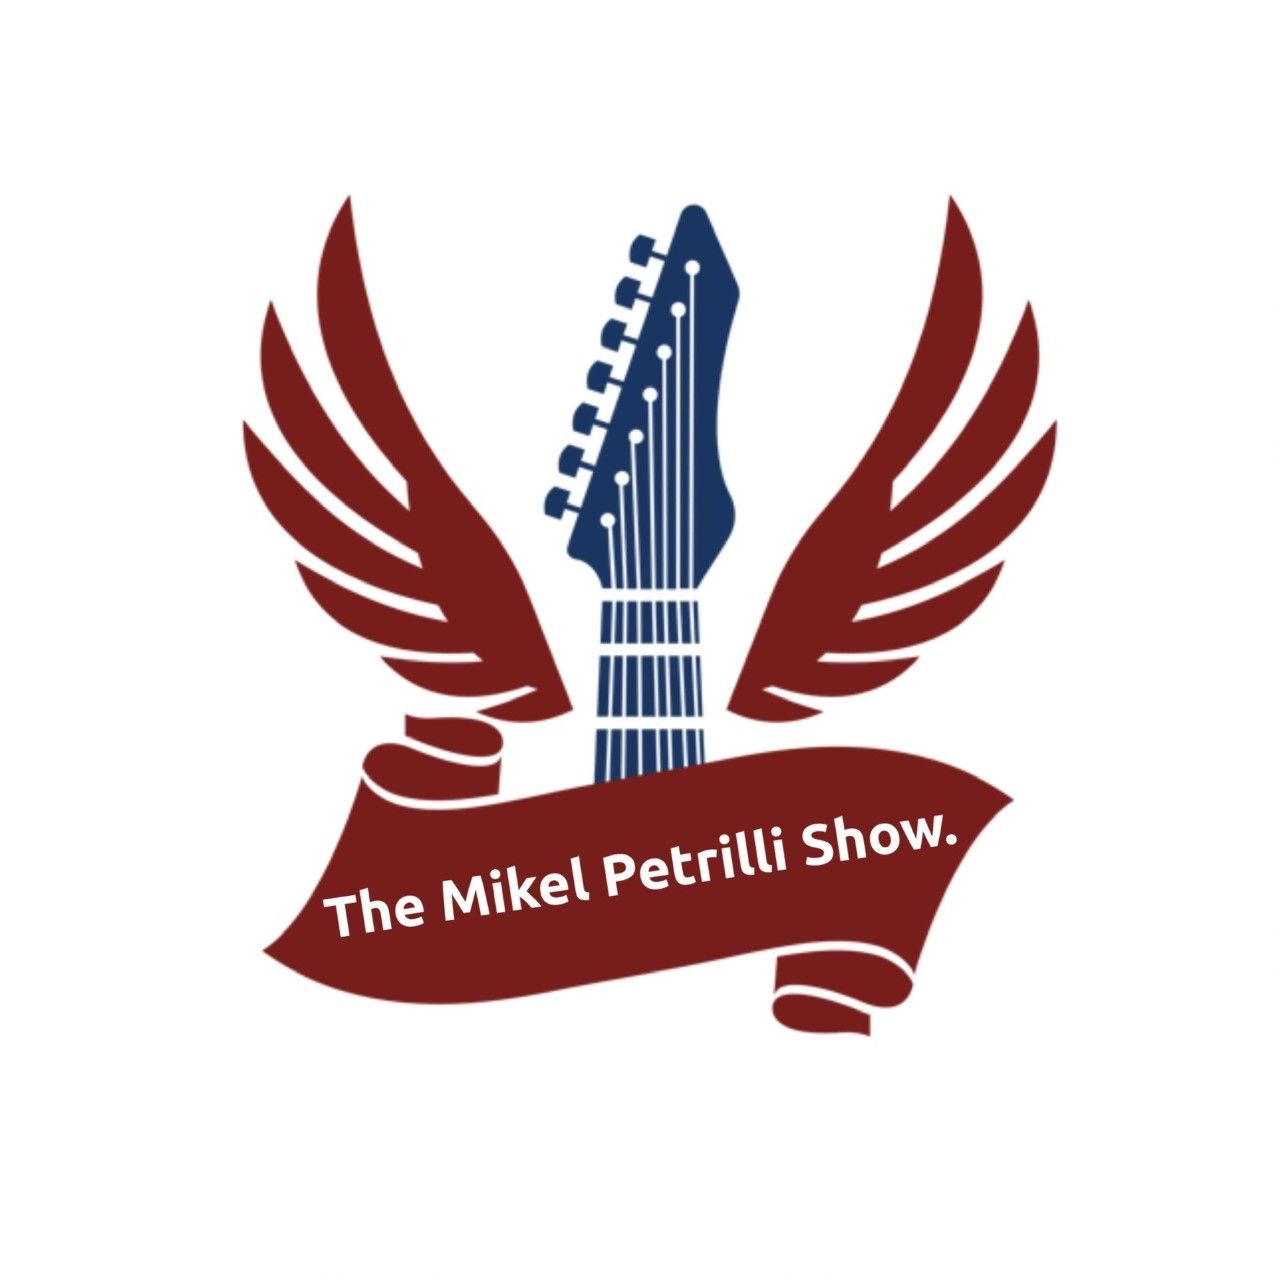 The mikel Petrelli show DJ show Logo 2022